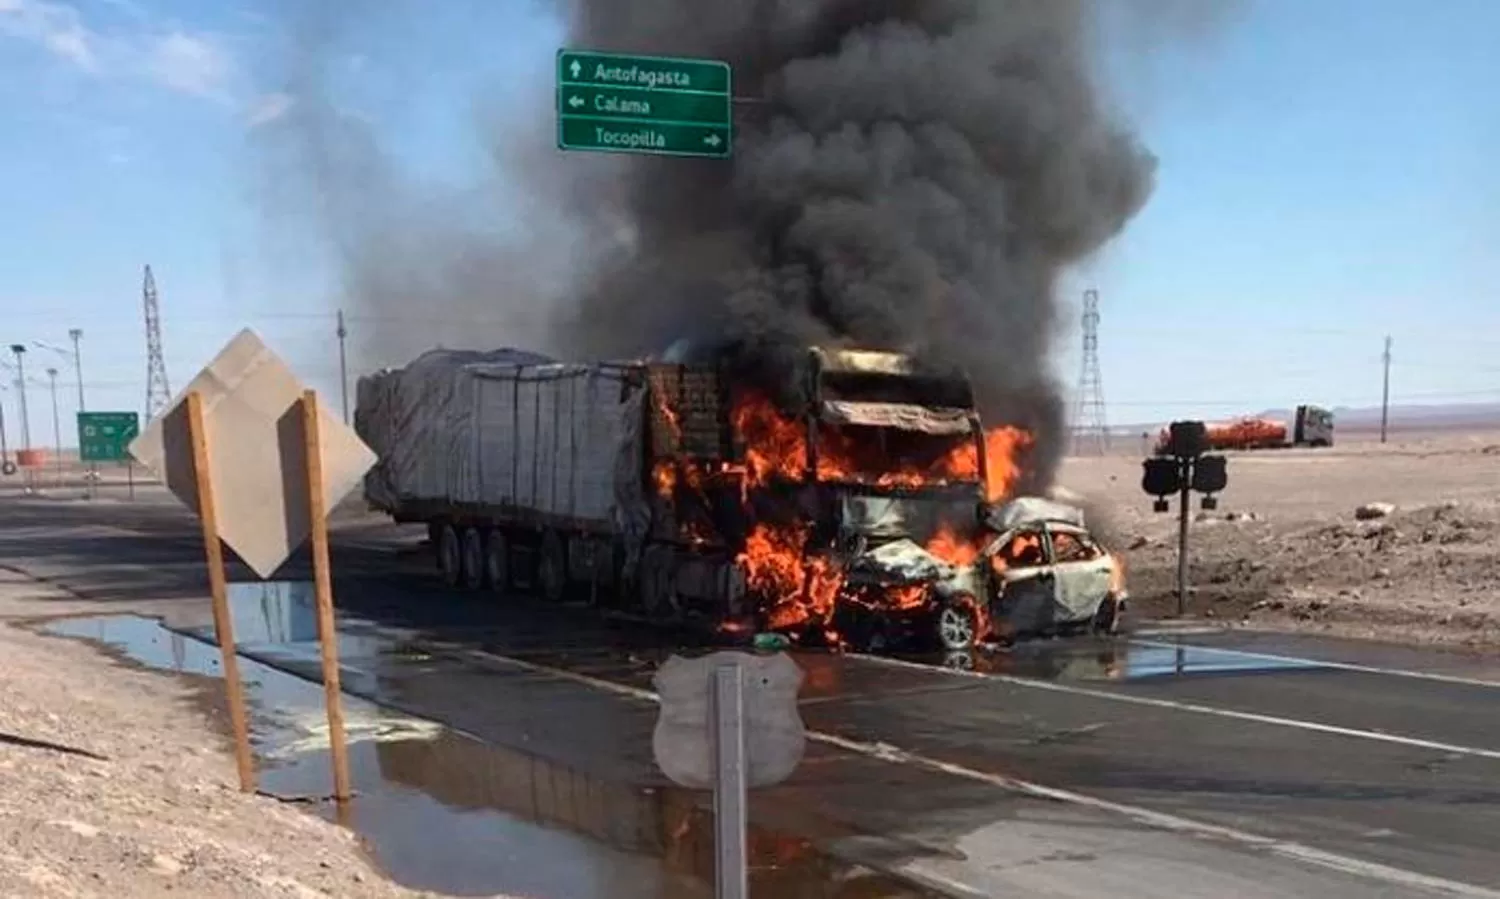 Morir incinerados debe ser lo peor, dijo un familiar de las víctimas del accidente en Chile